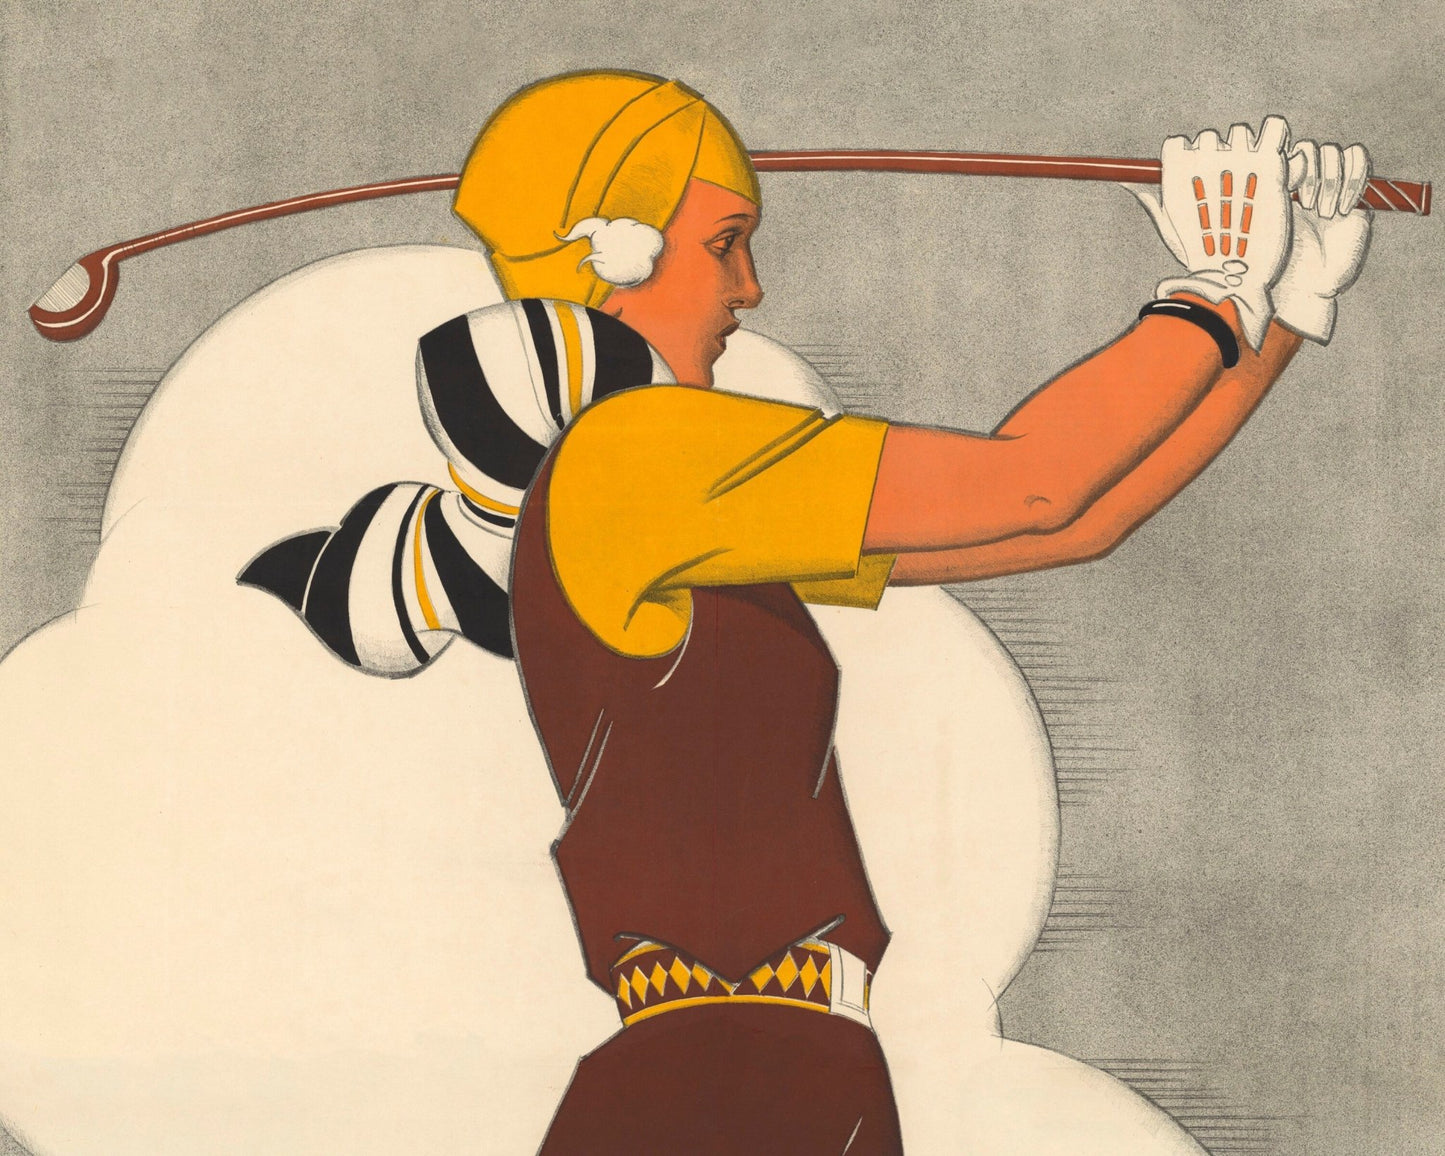 René Vincent "Golf de Sarlabot. Houlgate - Cabourg" (c.1930) - Mabon Gallery